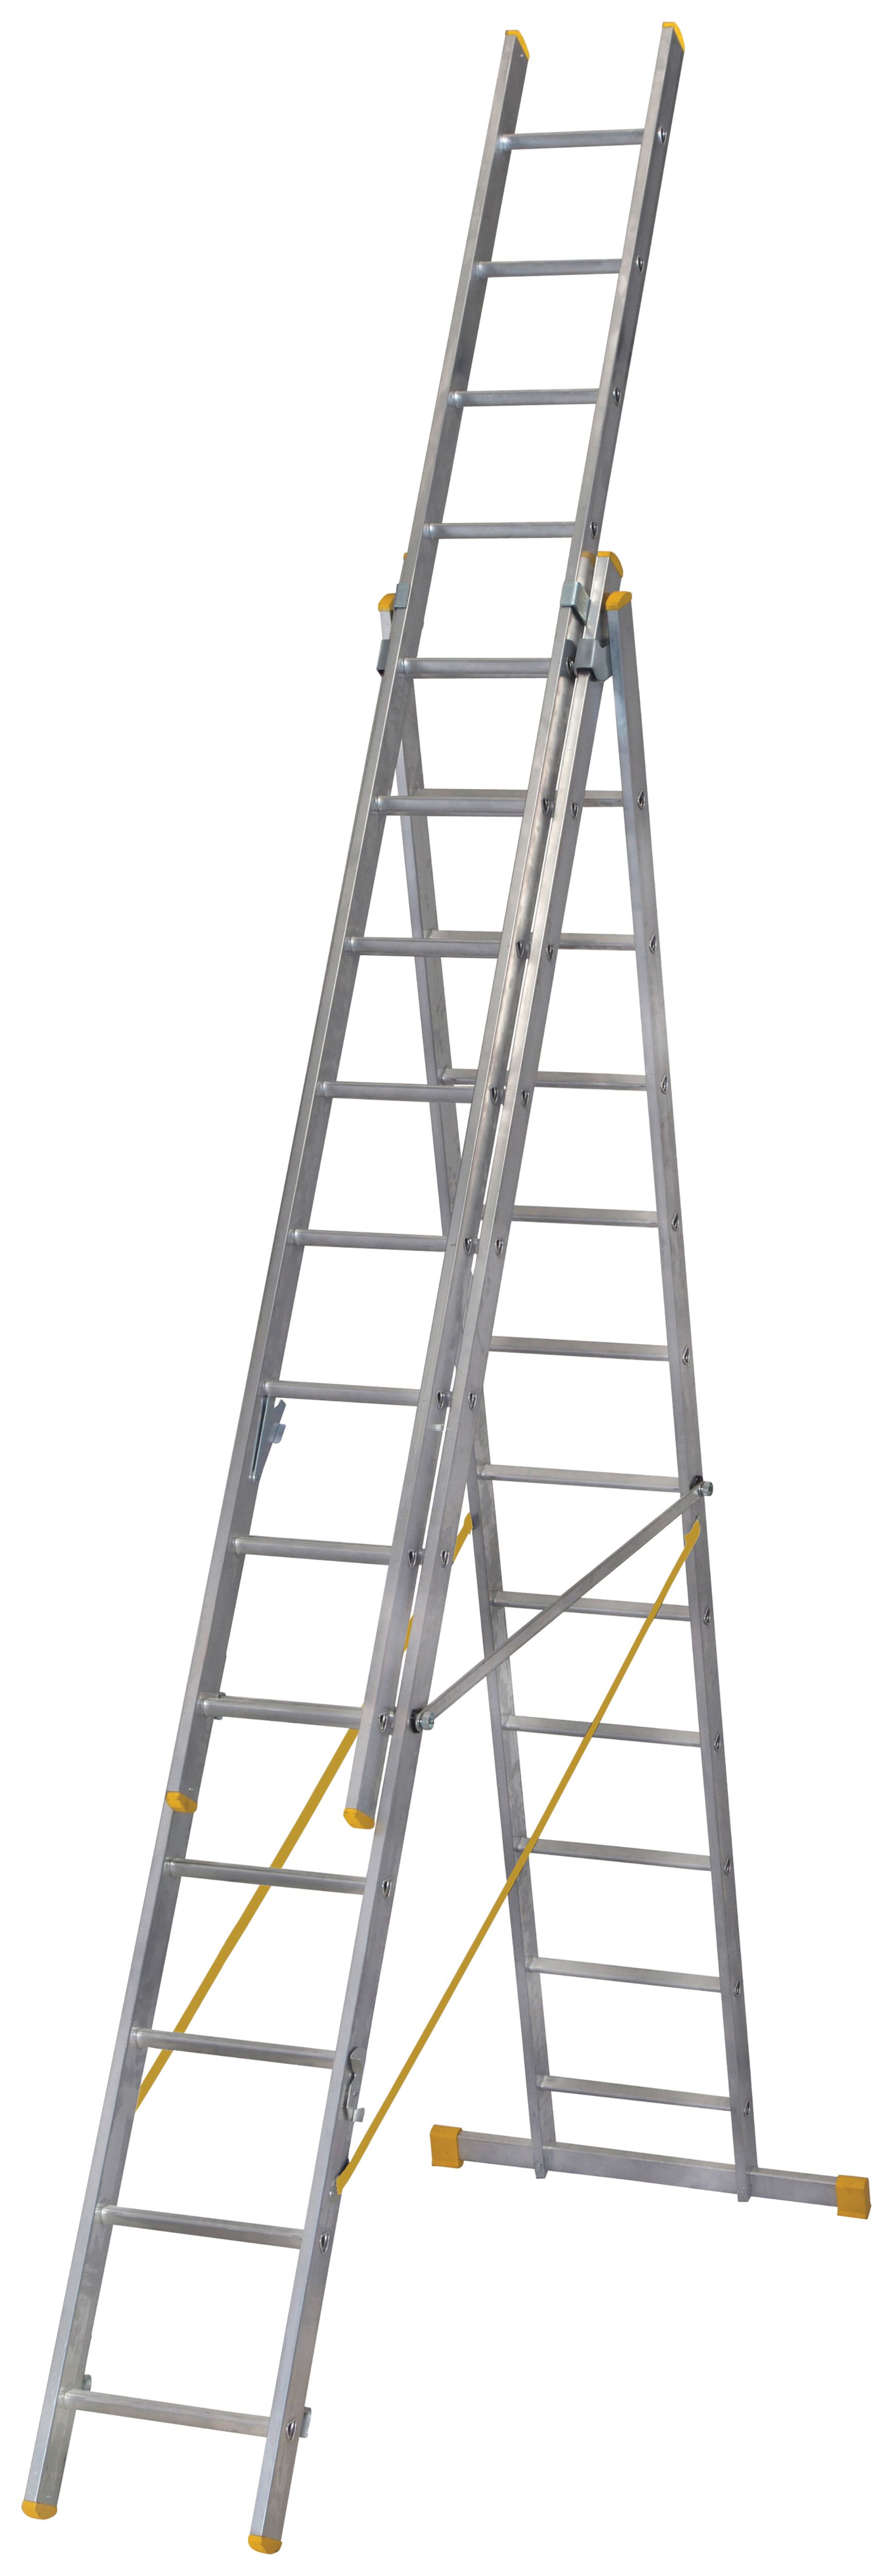 Loft Ladders | Ladders & Platforms | Wickes.co.uk